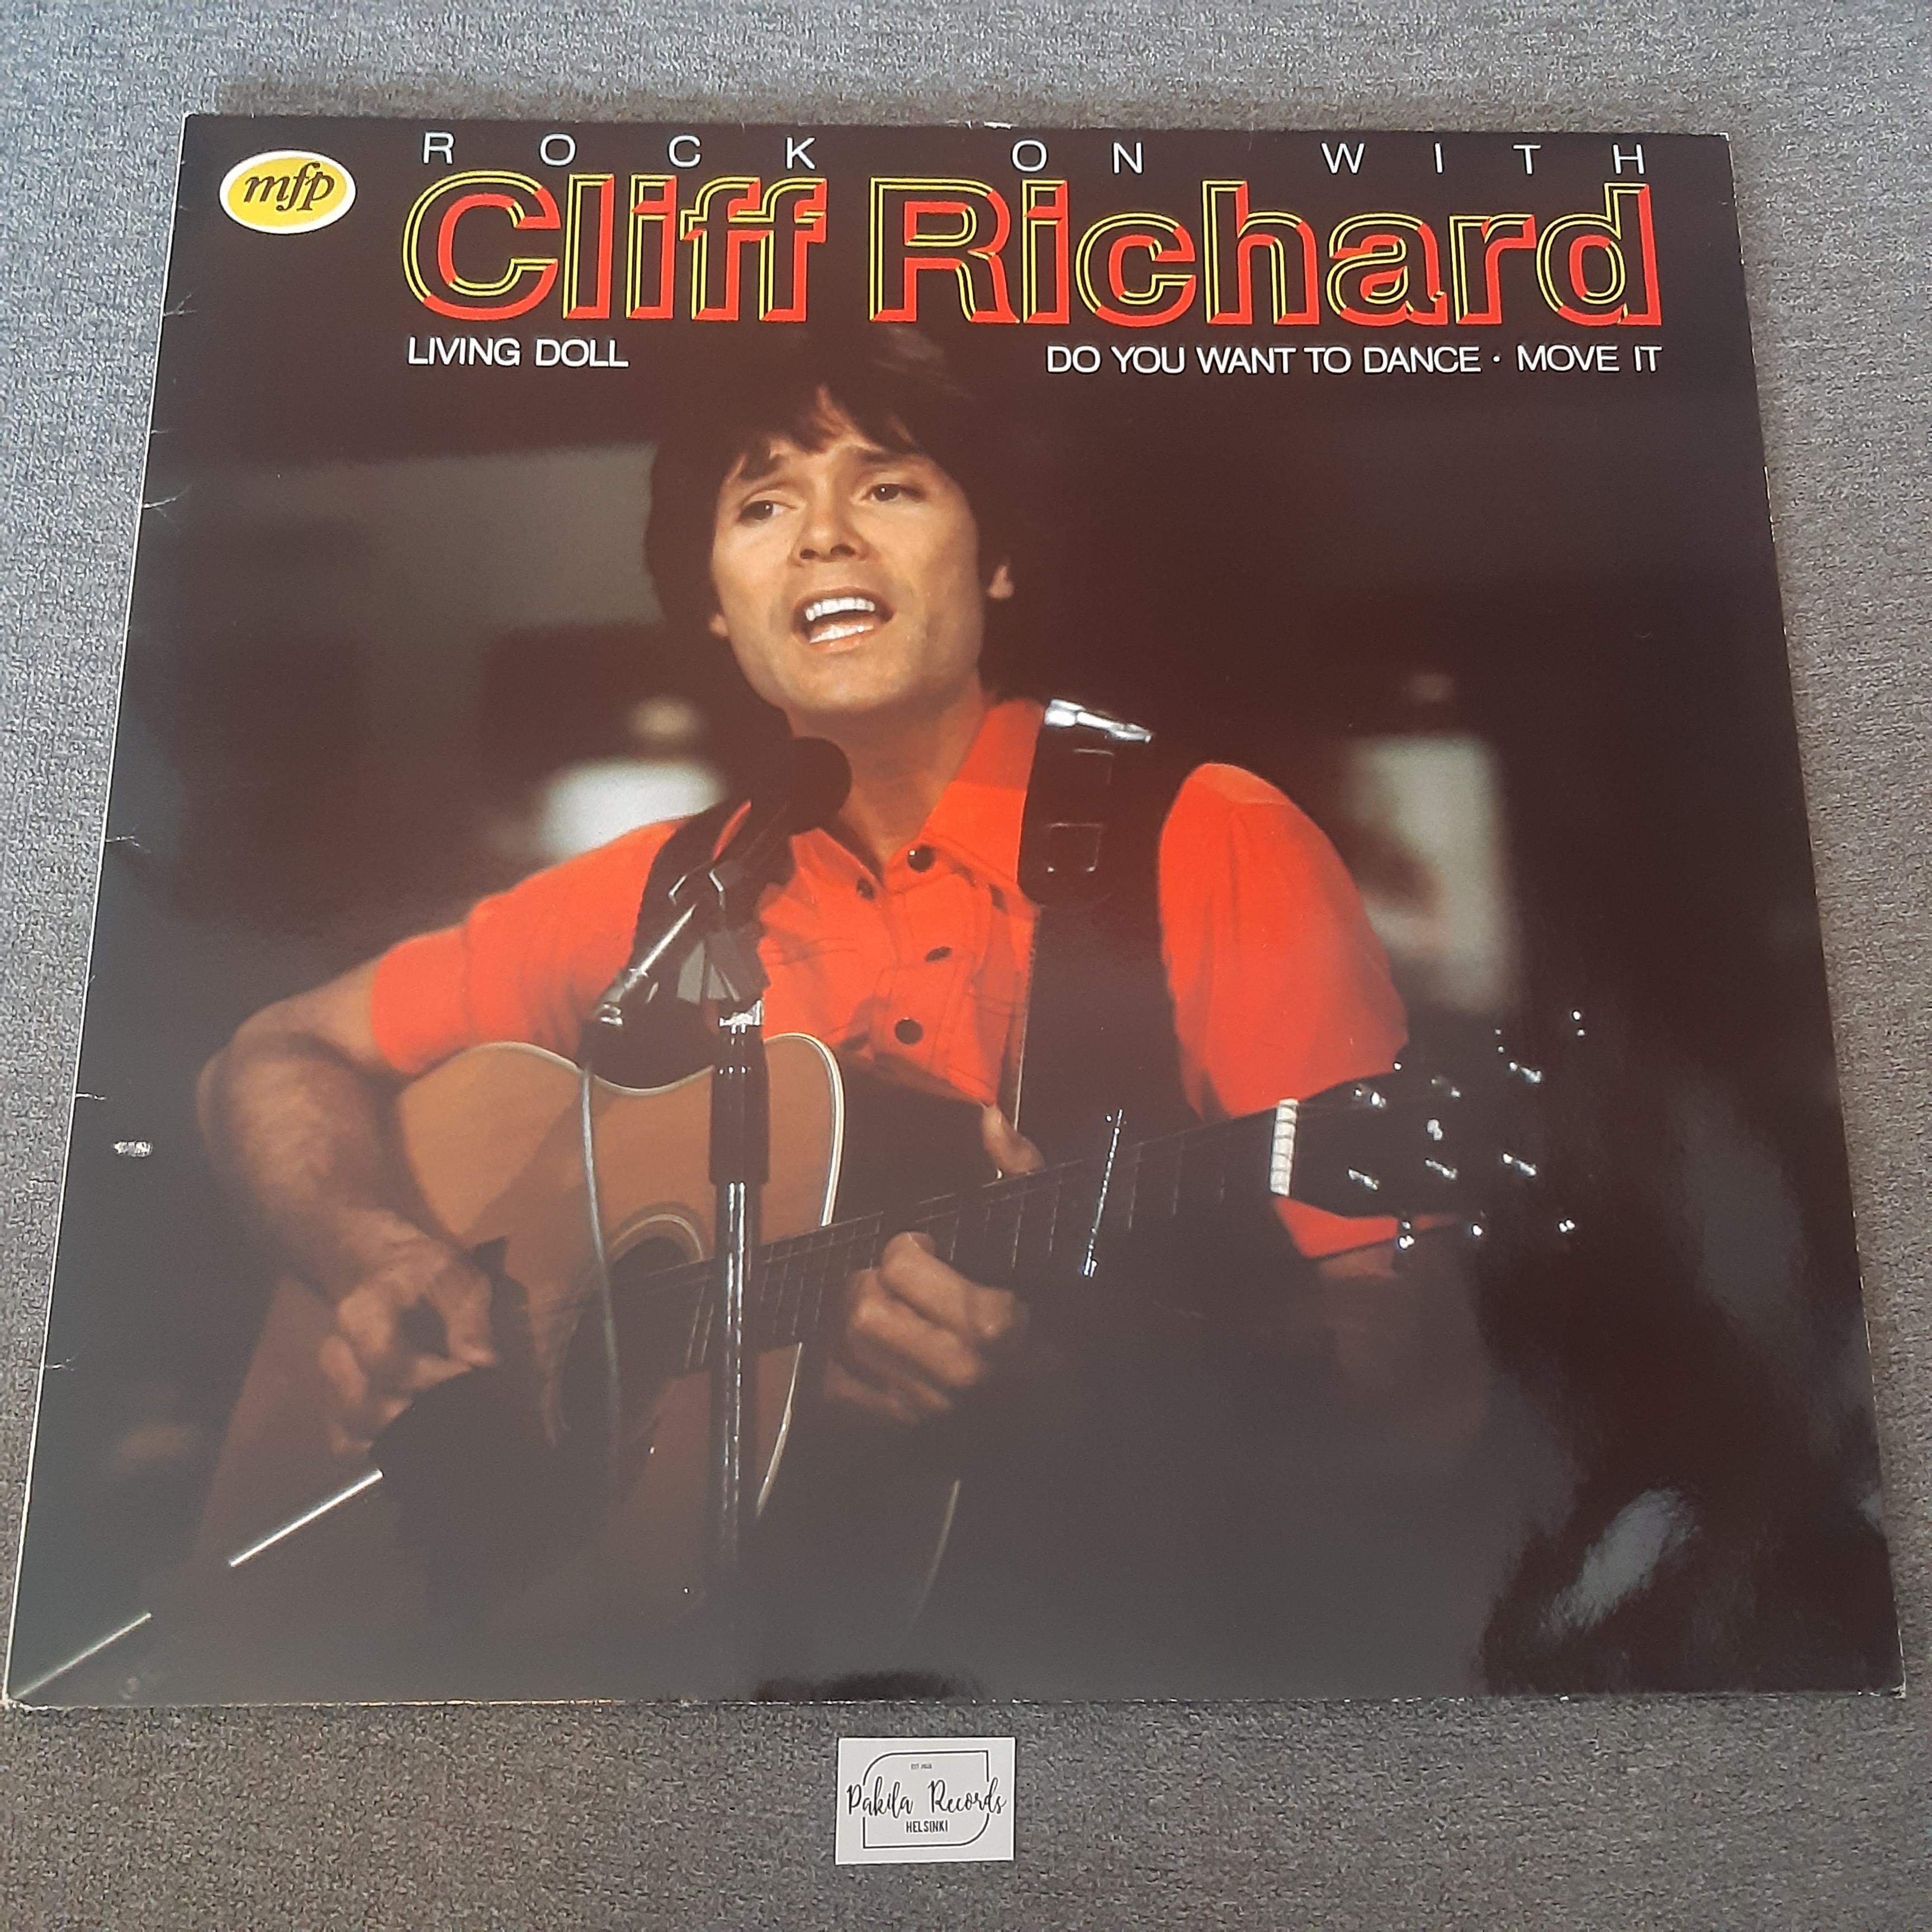 Cliff Richard - Rock On With Cliff Richard - LP (käytetty)